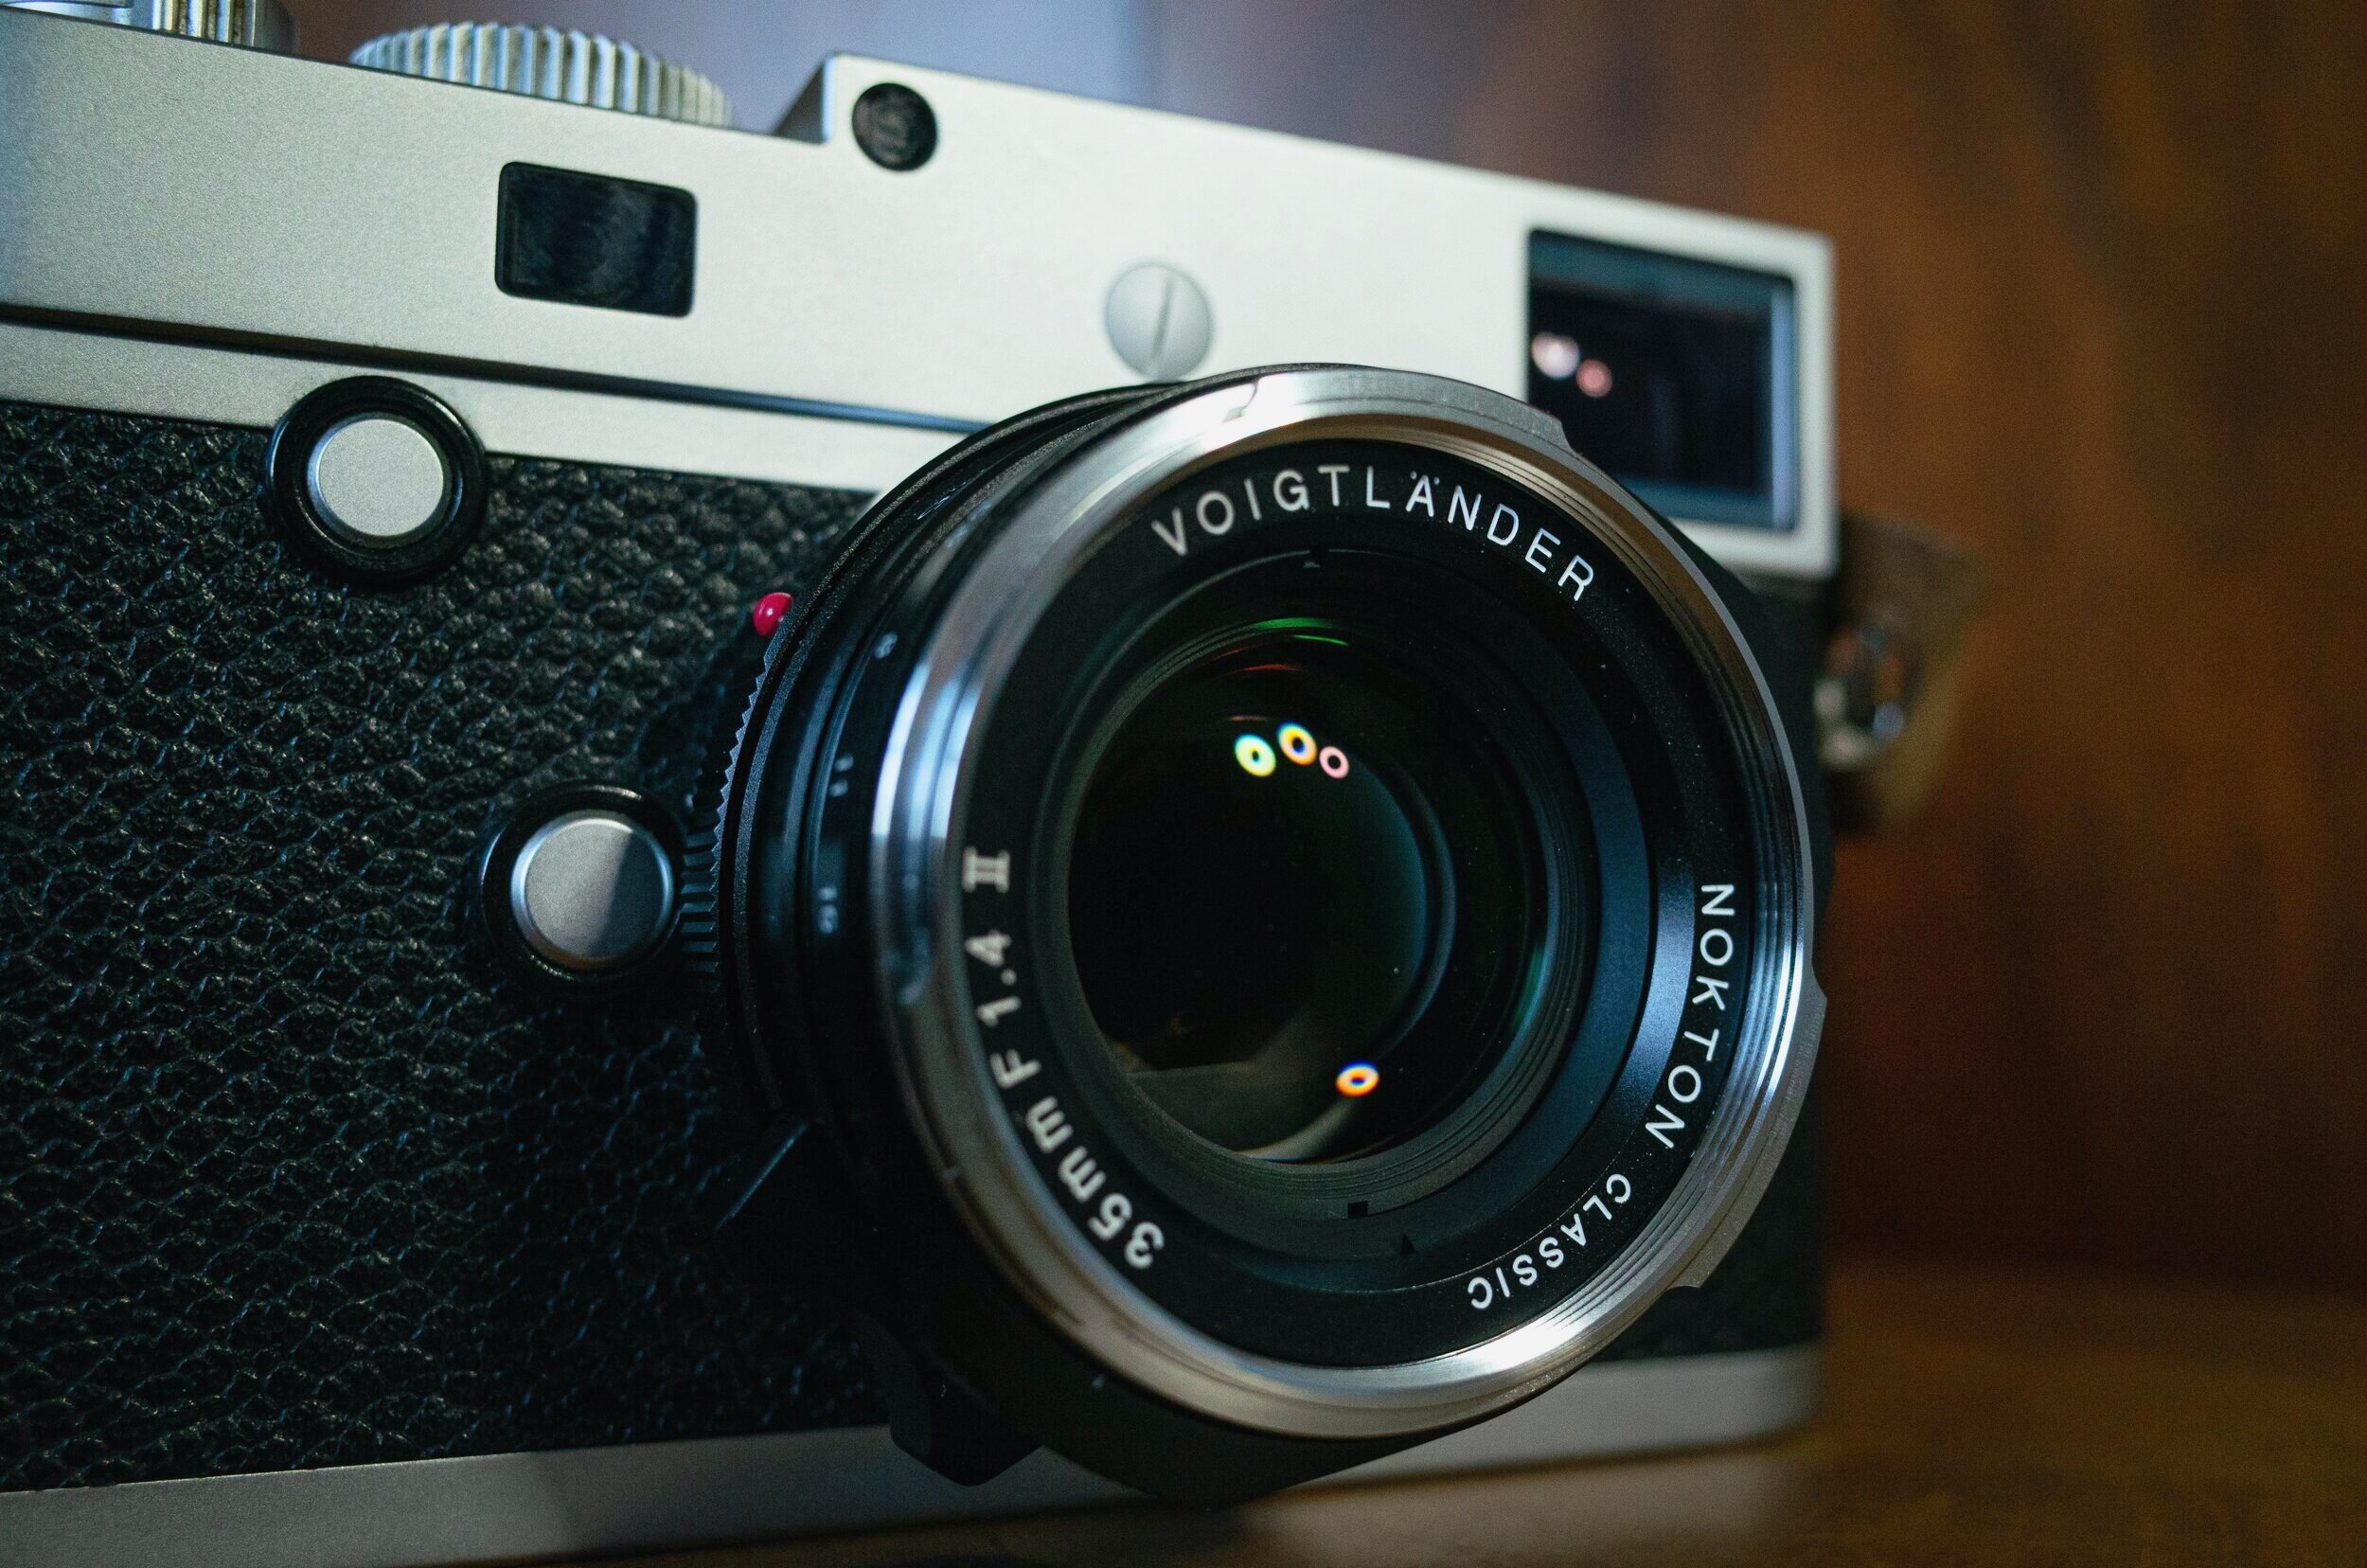 Voigtlander Nokton Classic 35mm F1.4 II VM review — Focus shift: a